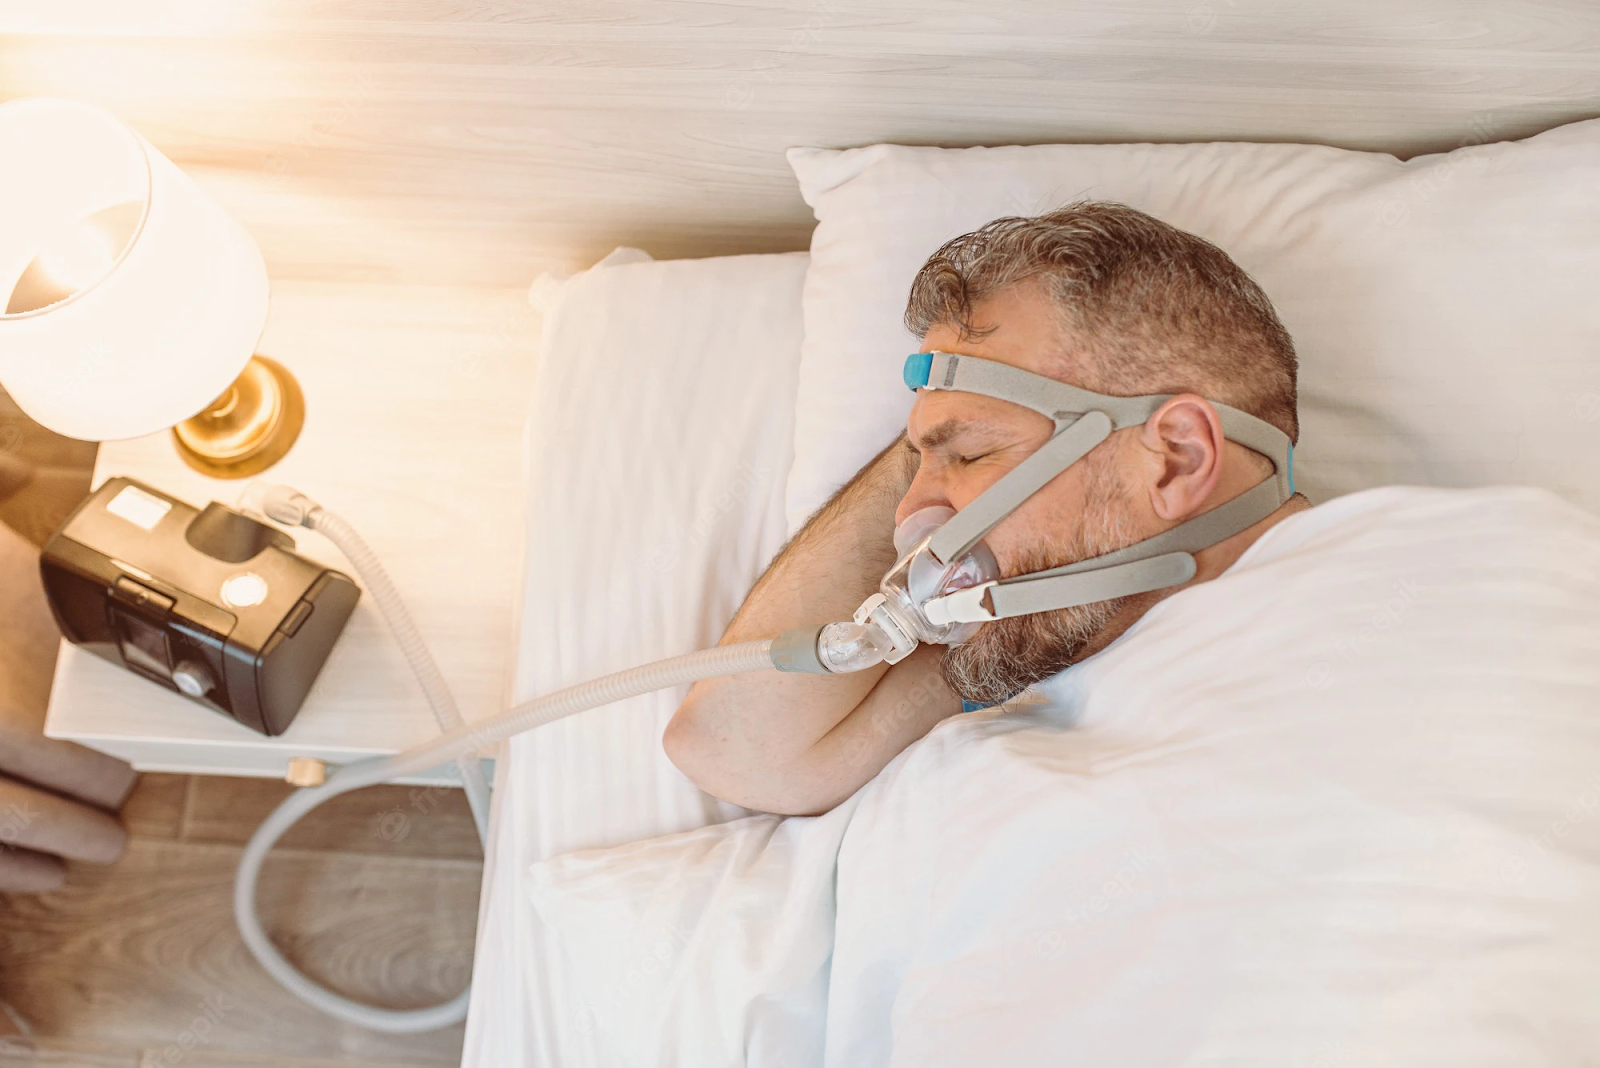 A man using CPAP machine to treat his sleep apnea